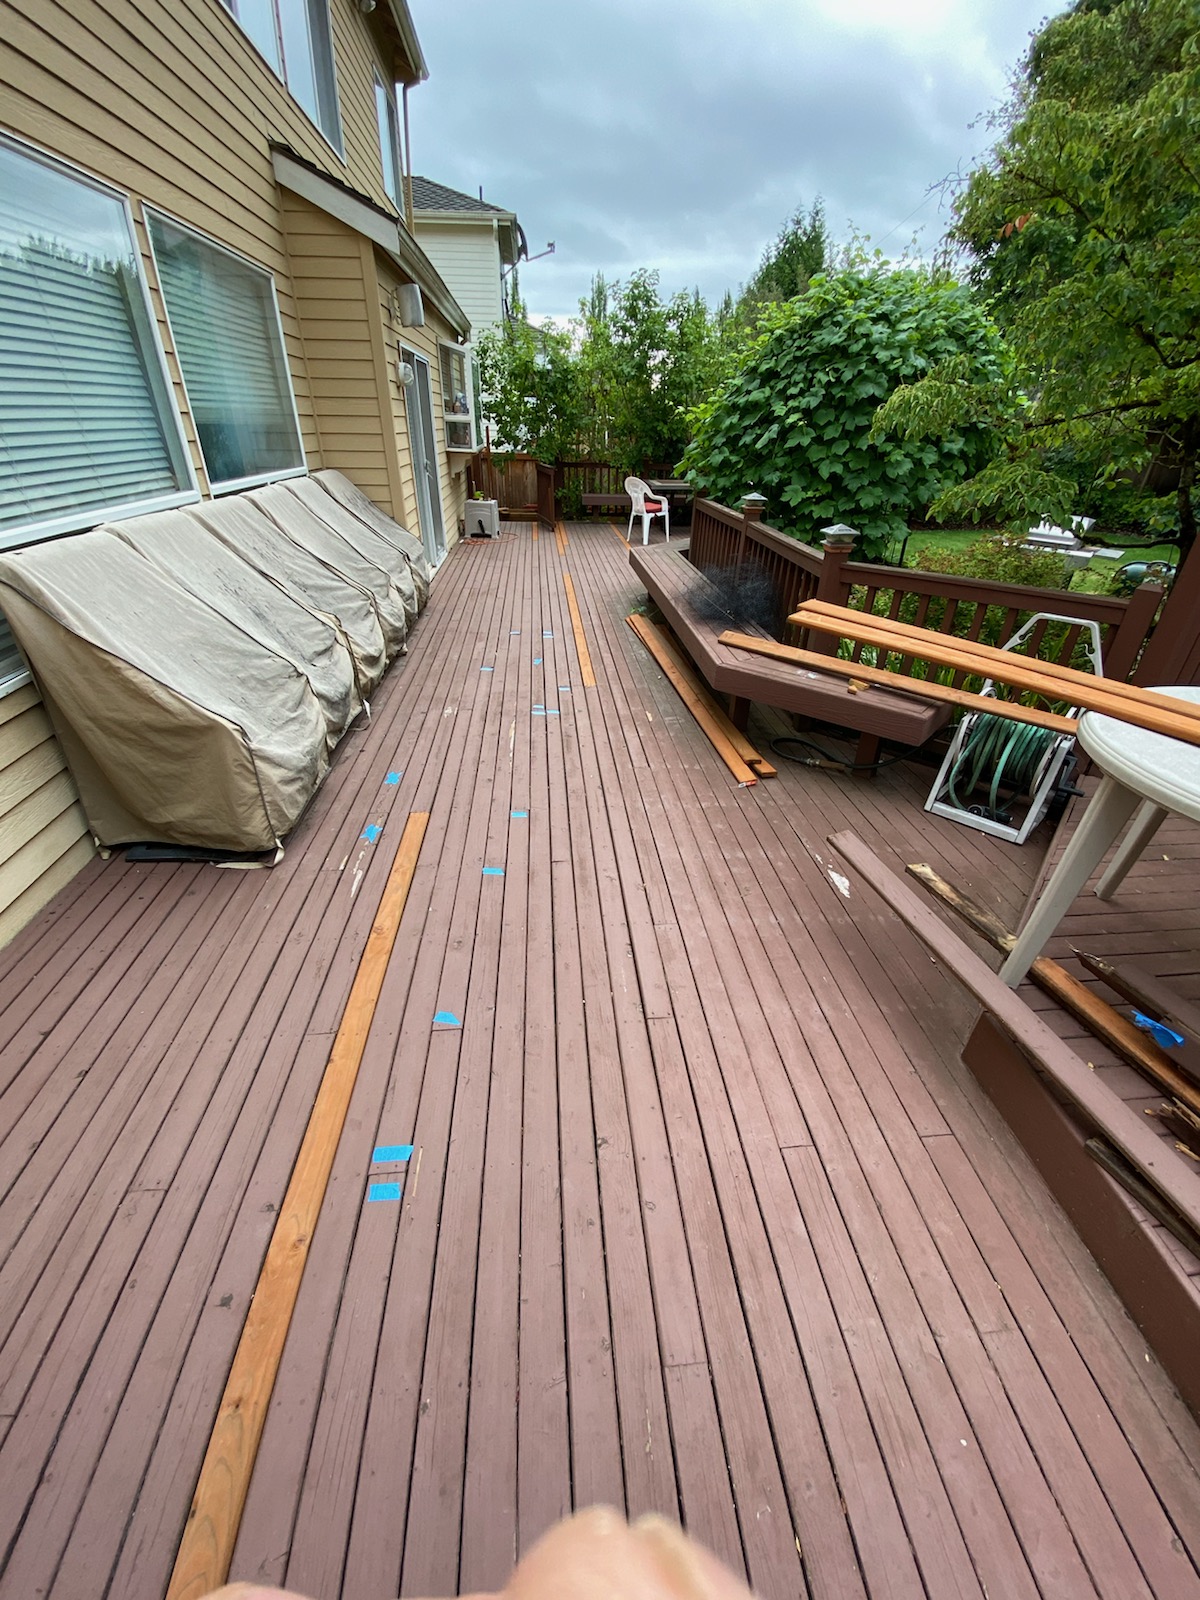 Replacing boards of the deck floor